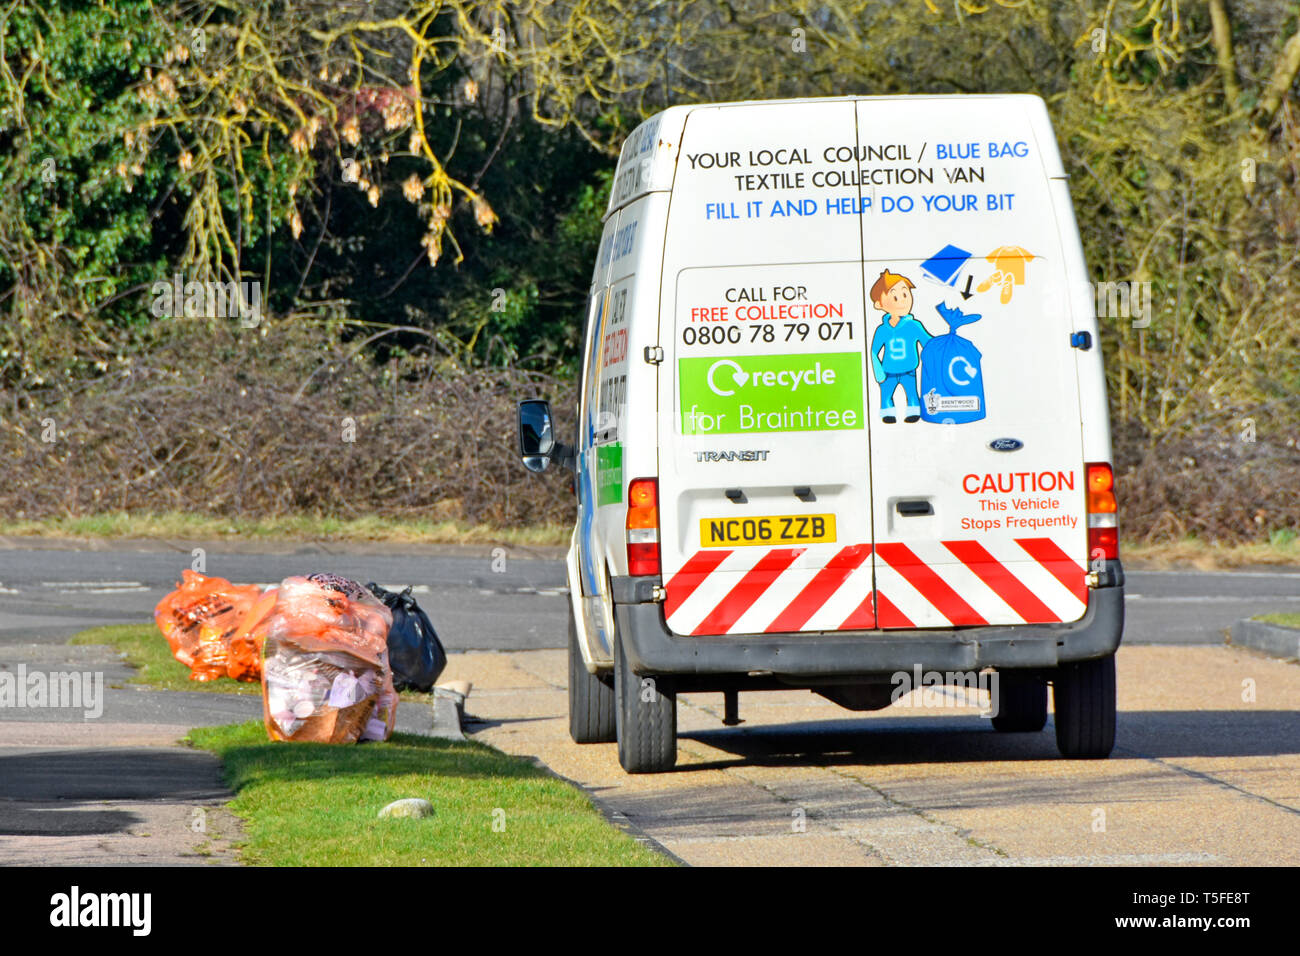 Ford Transit van für Haushalt Textilien Bekleidung Kollektion für Recycling Kleidung von Hausmüll in Säcken getrennt für die Lkw-UK Stockfoto